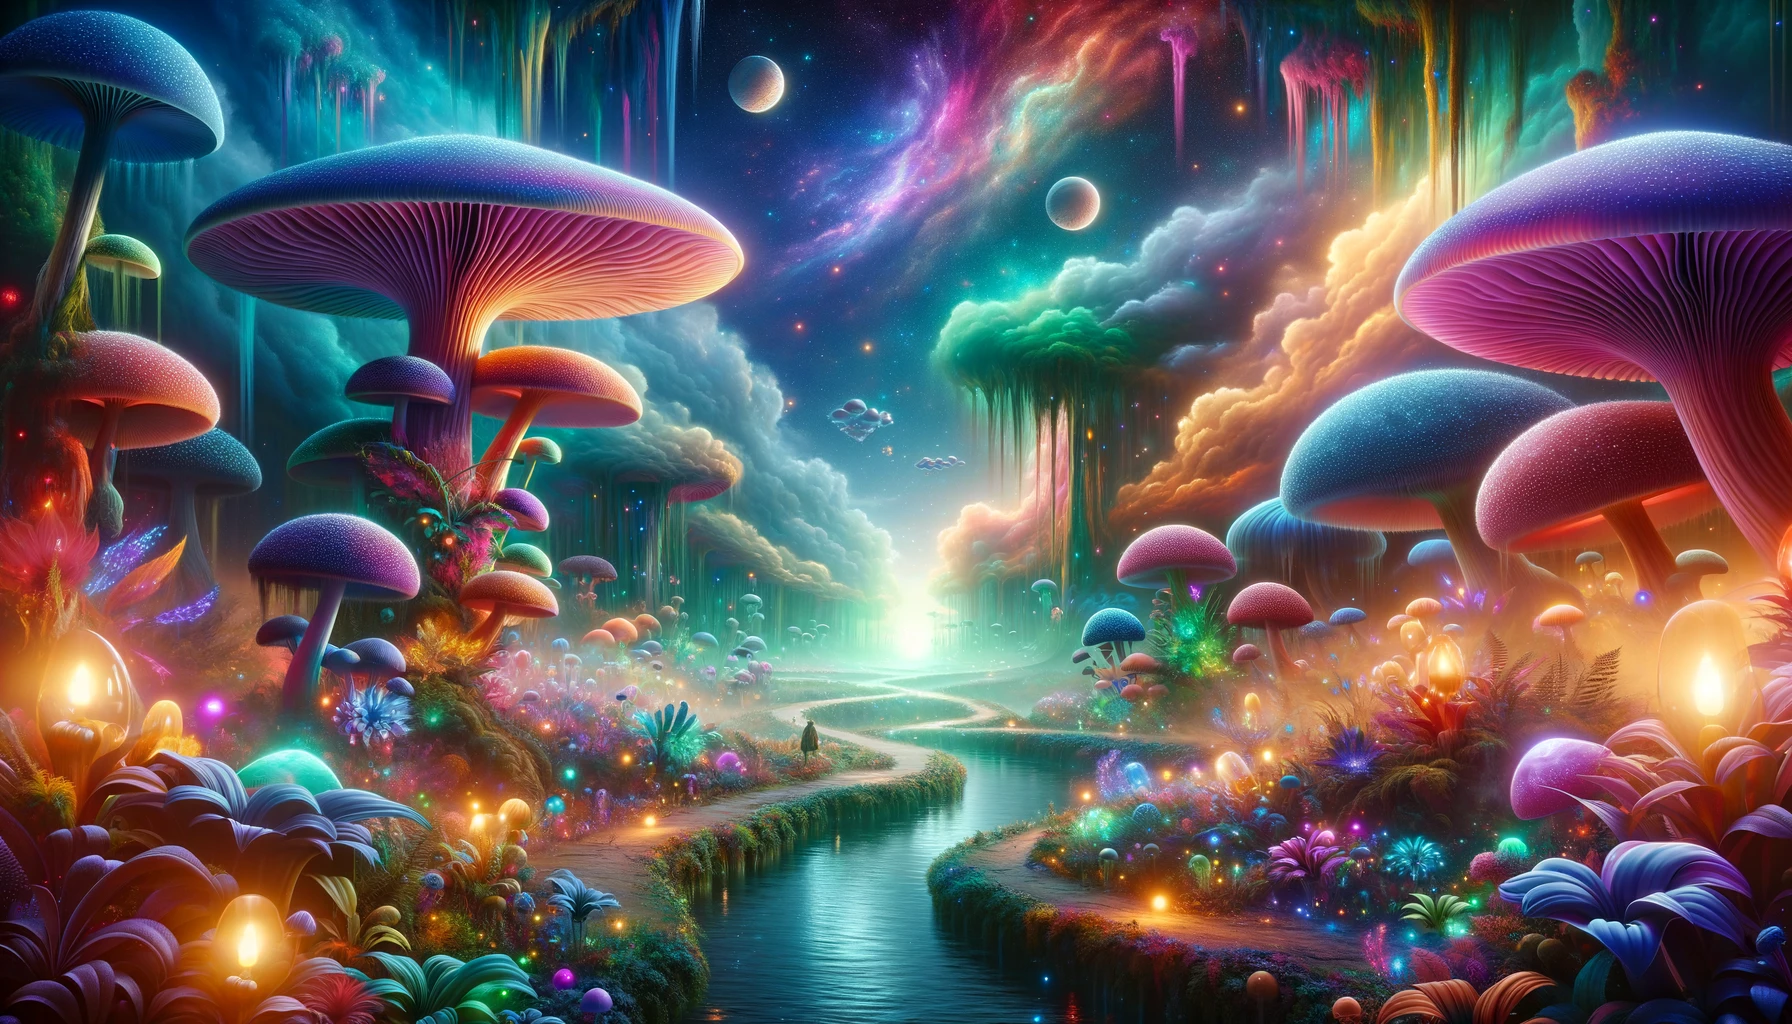 Magic mushroom trip